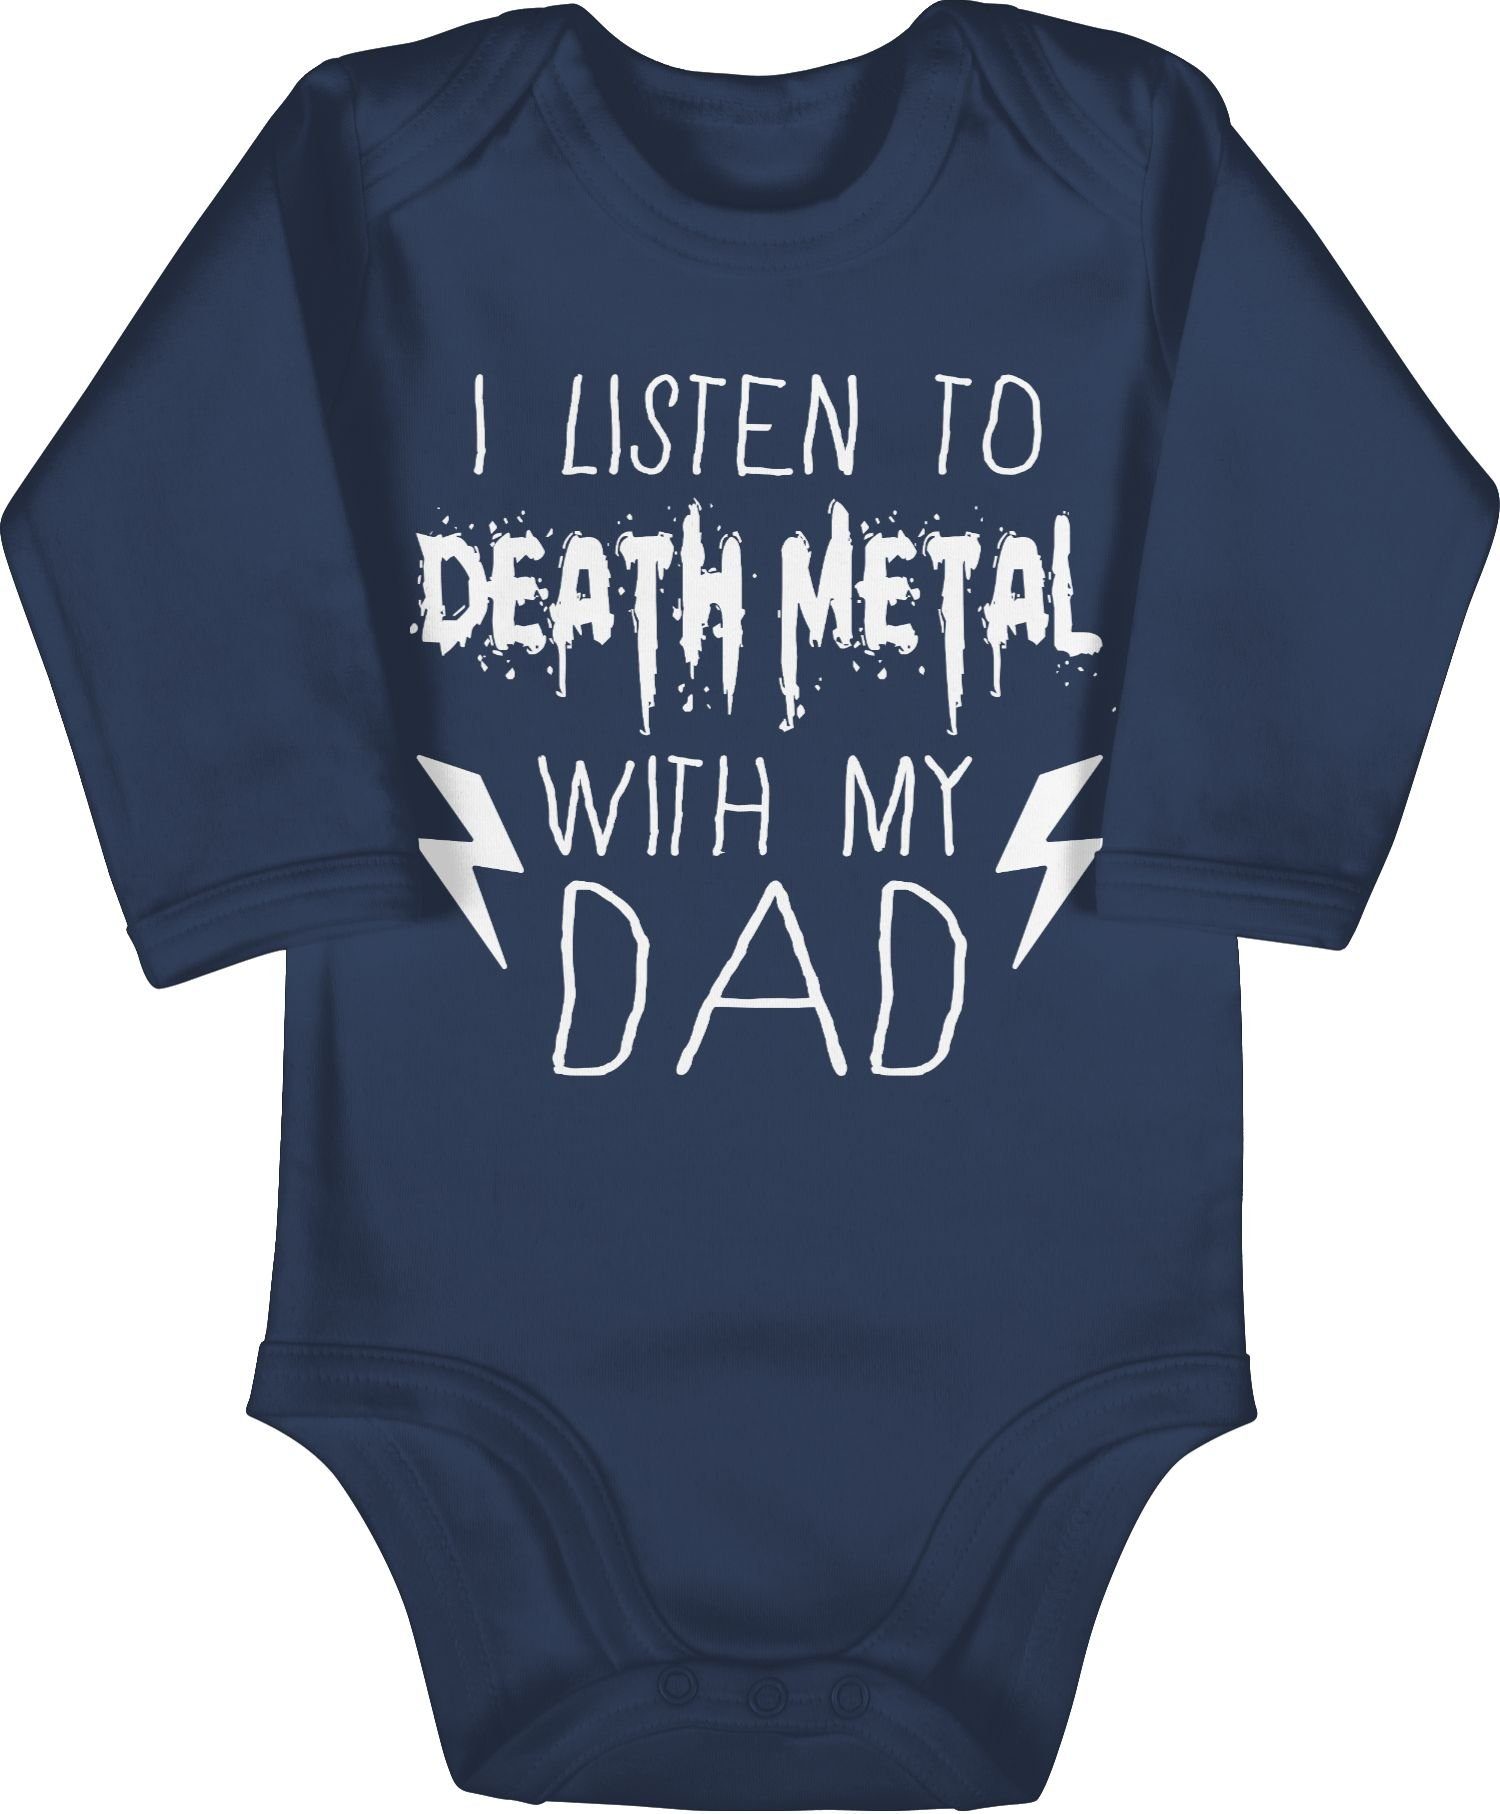 Shirtracer Shirtbody I listen to Death Metal with my dad weiß Sprüche Baby 3 Navy Blau